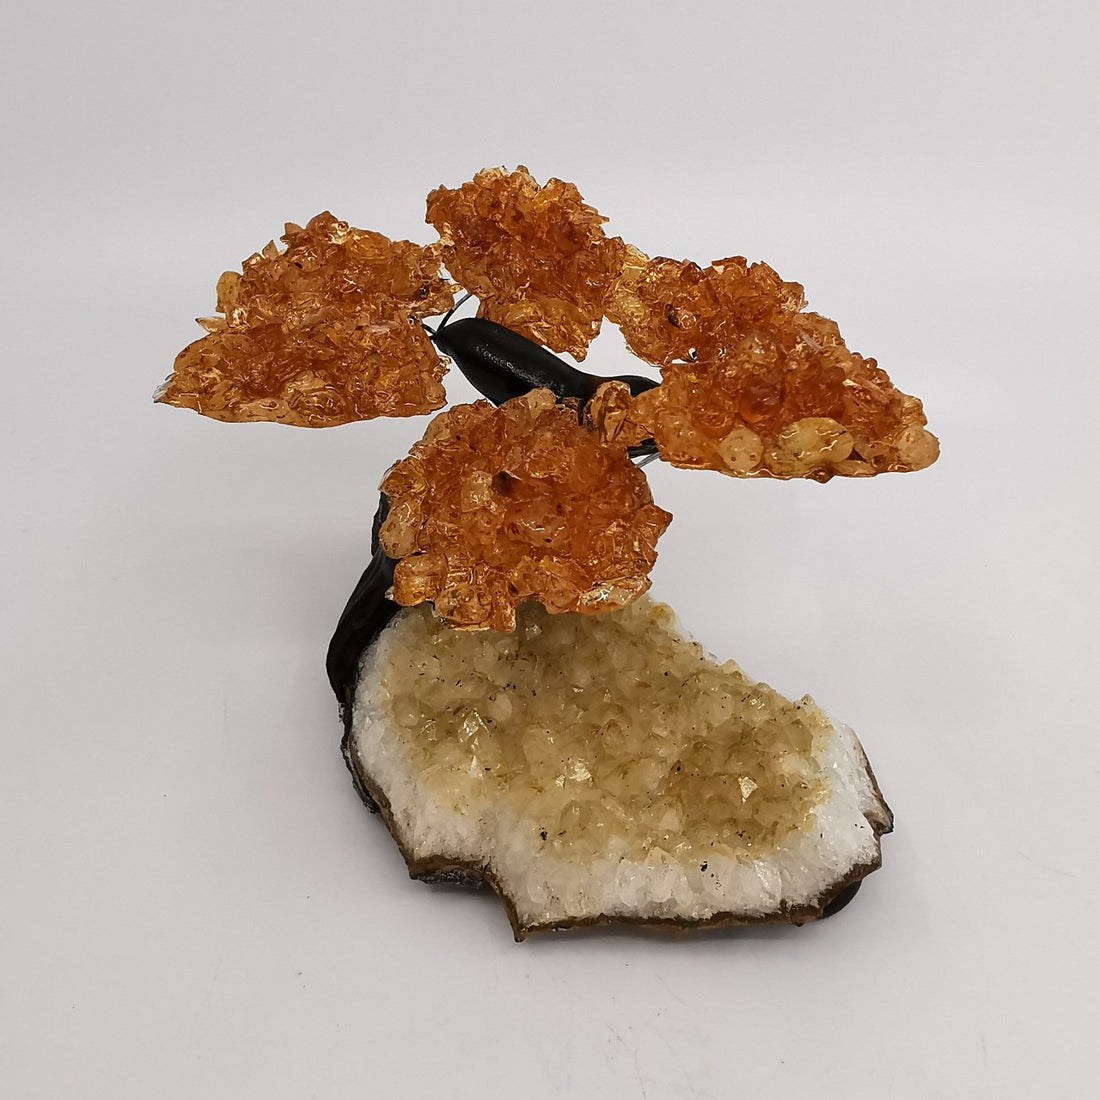 Crystal Tree size 2 - Tree nr 2 - Citrine Crystal Tree on Citrine Base - Citrin krystalltre på citrin base